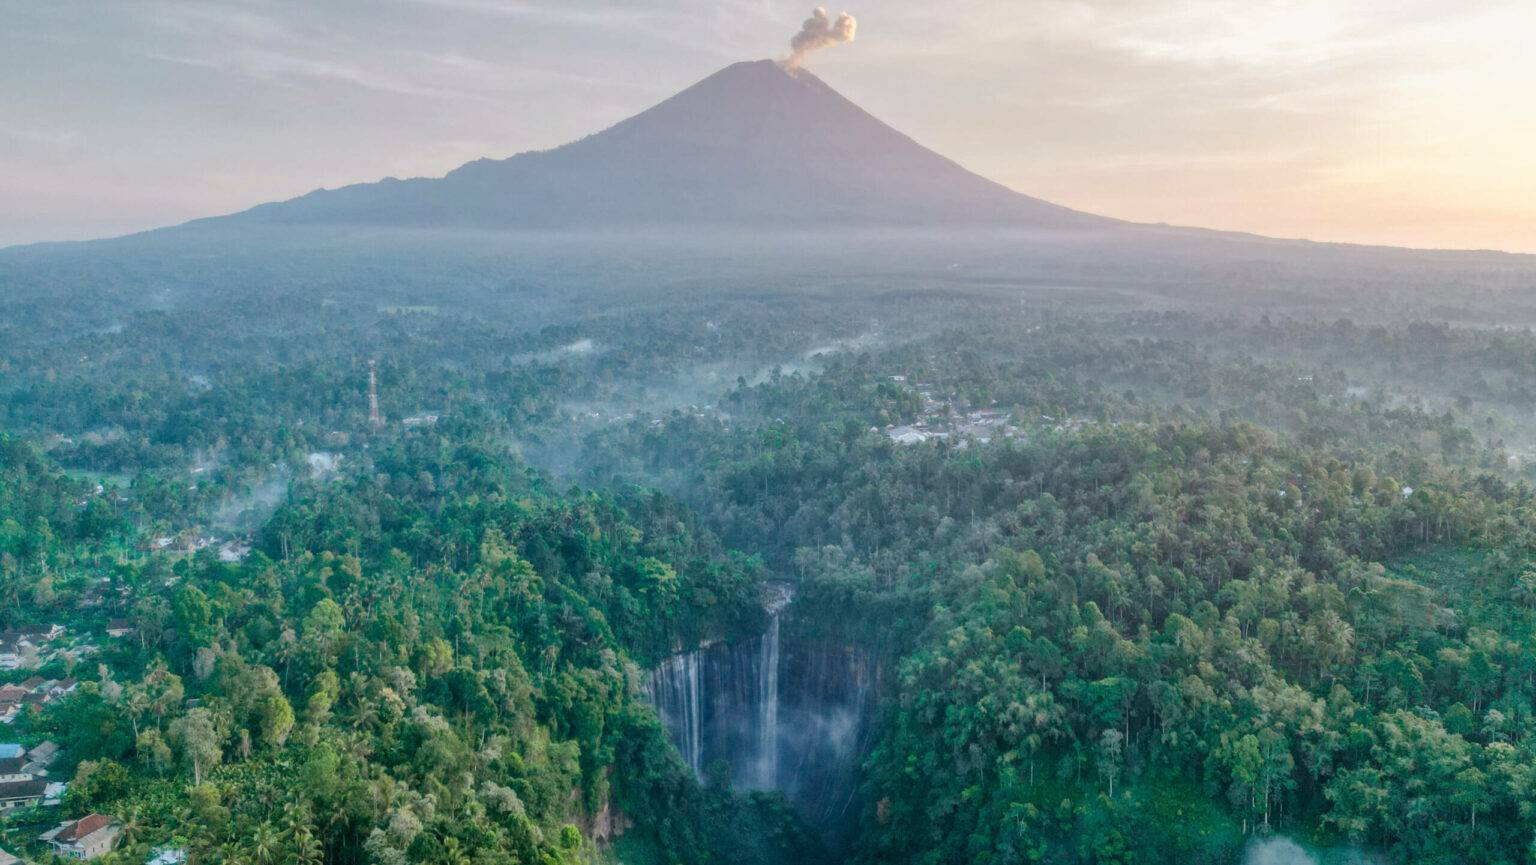 Der Wasserfall mit dem rauchenden Vulkan Semeru im Hintergrund könnte auch aus einem Science-Fiction Film stammen, oder?